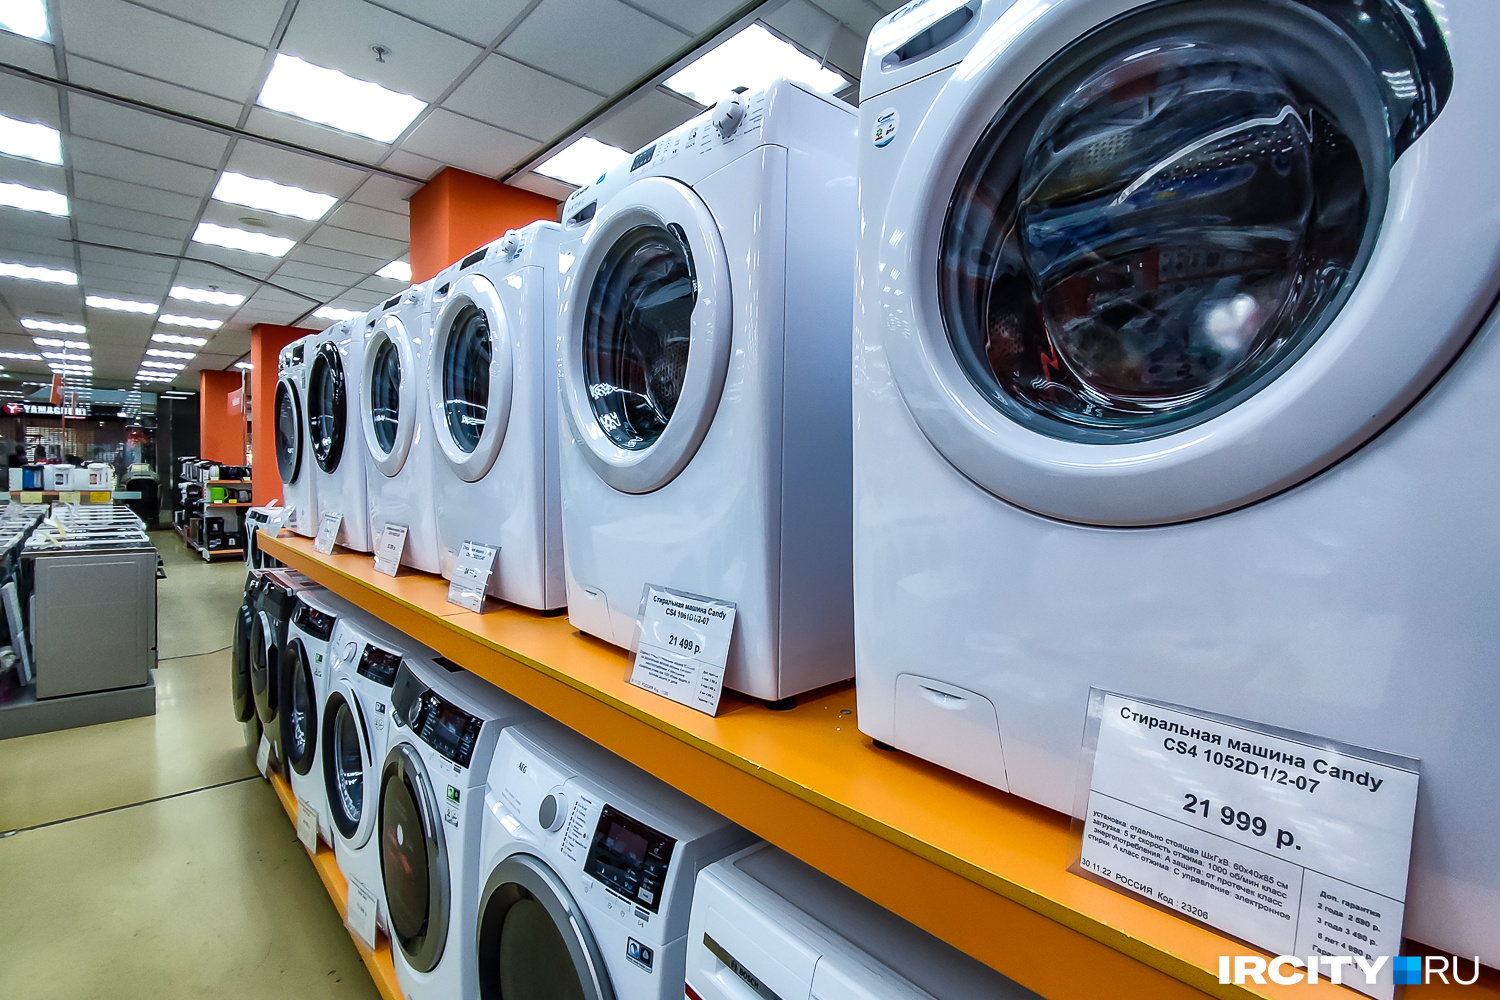 Наиболее бюджетные варианты стиральных машин — итальянские Candy, российские Leran и Willmark